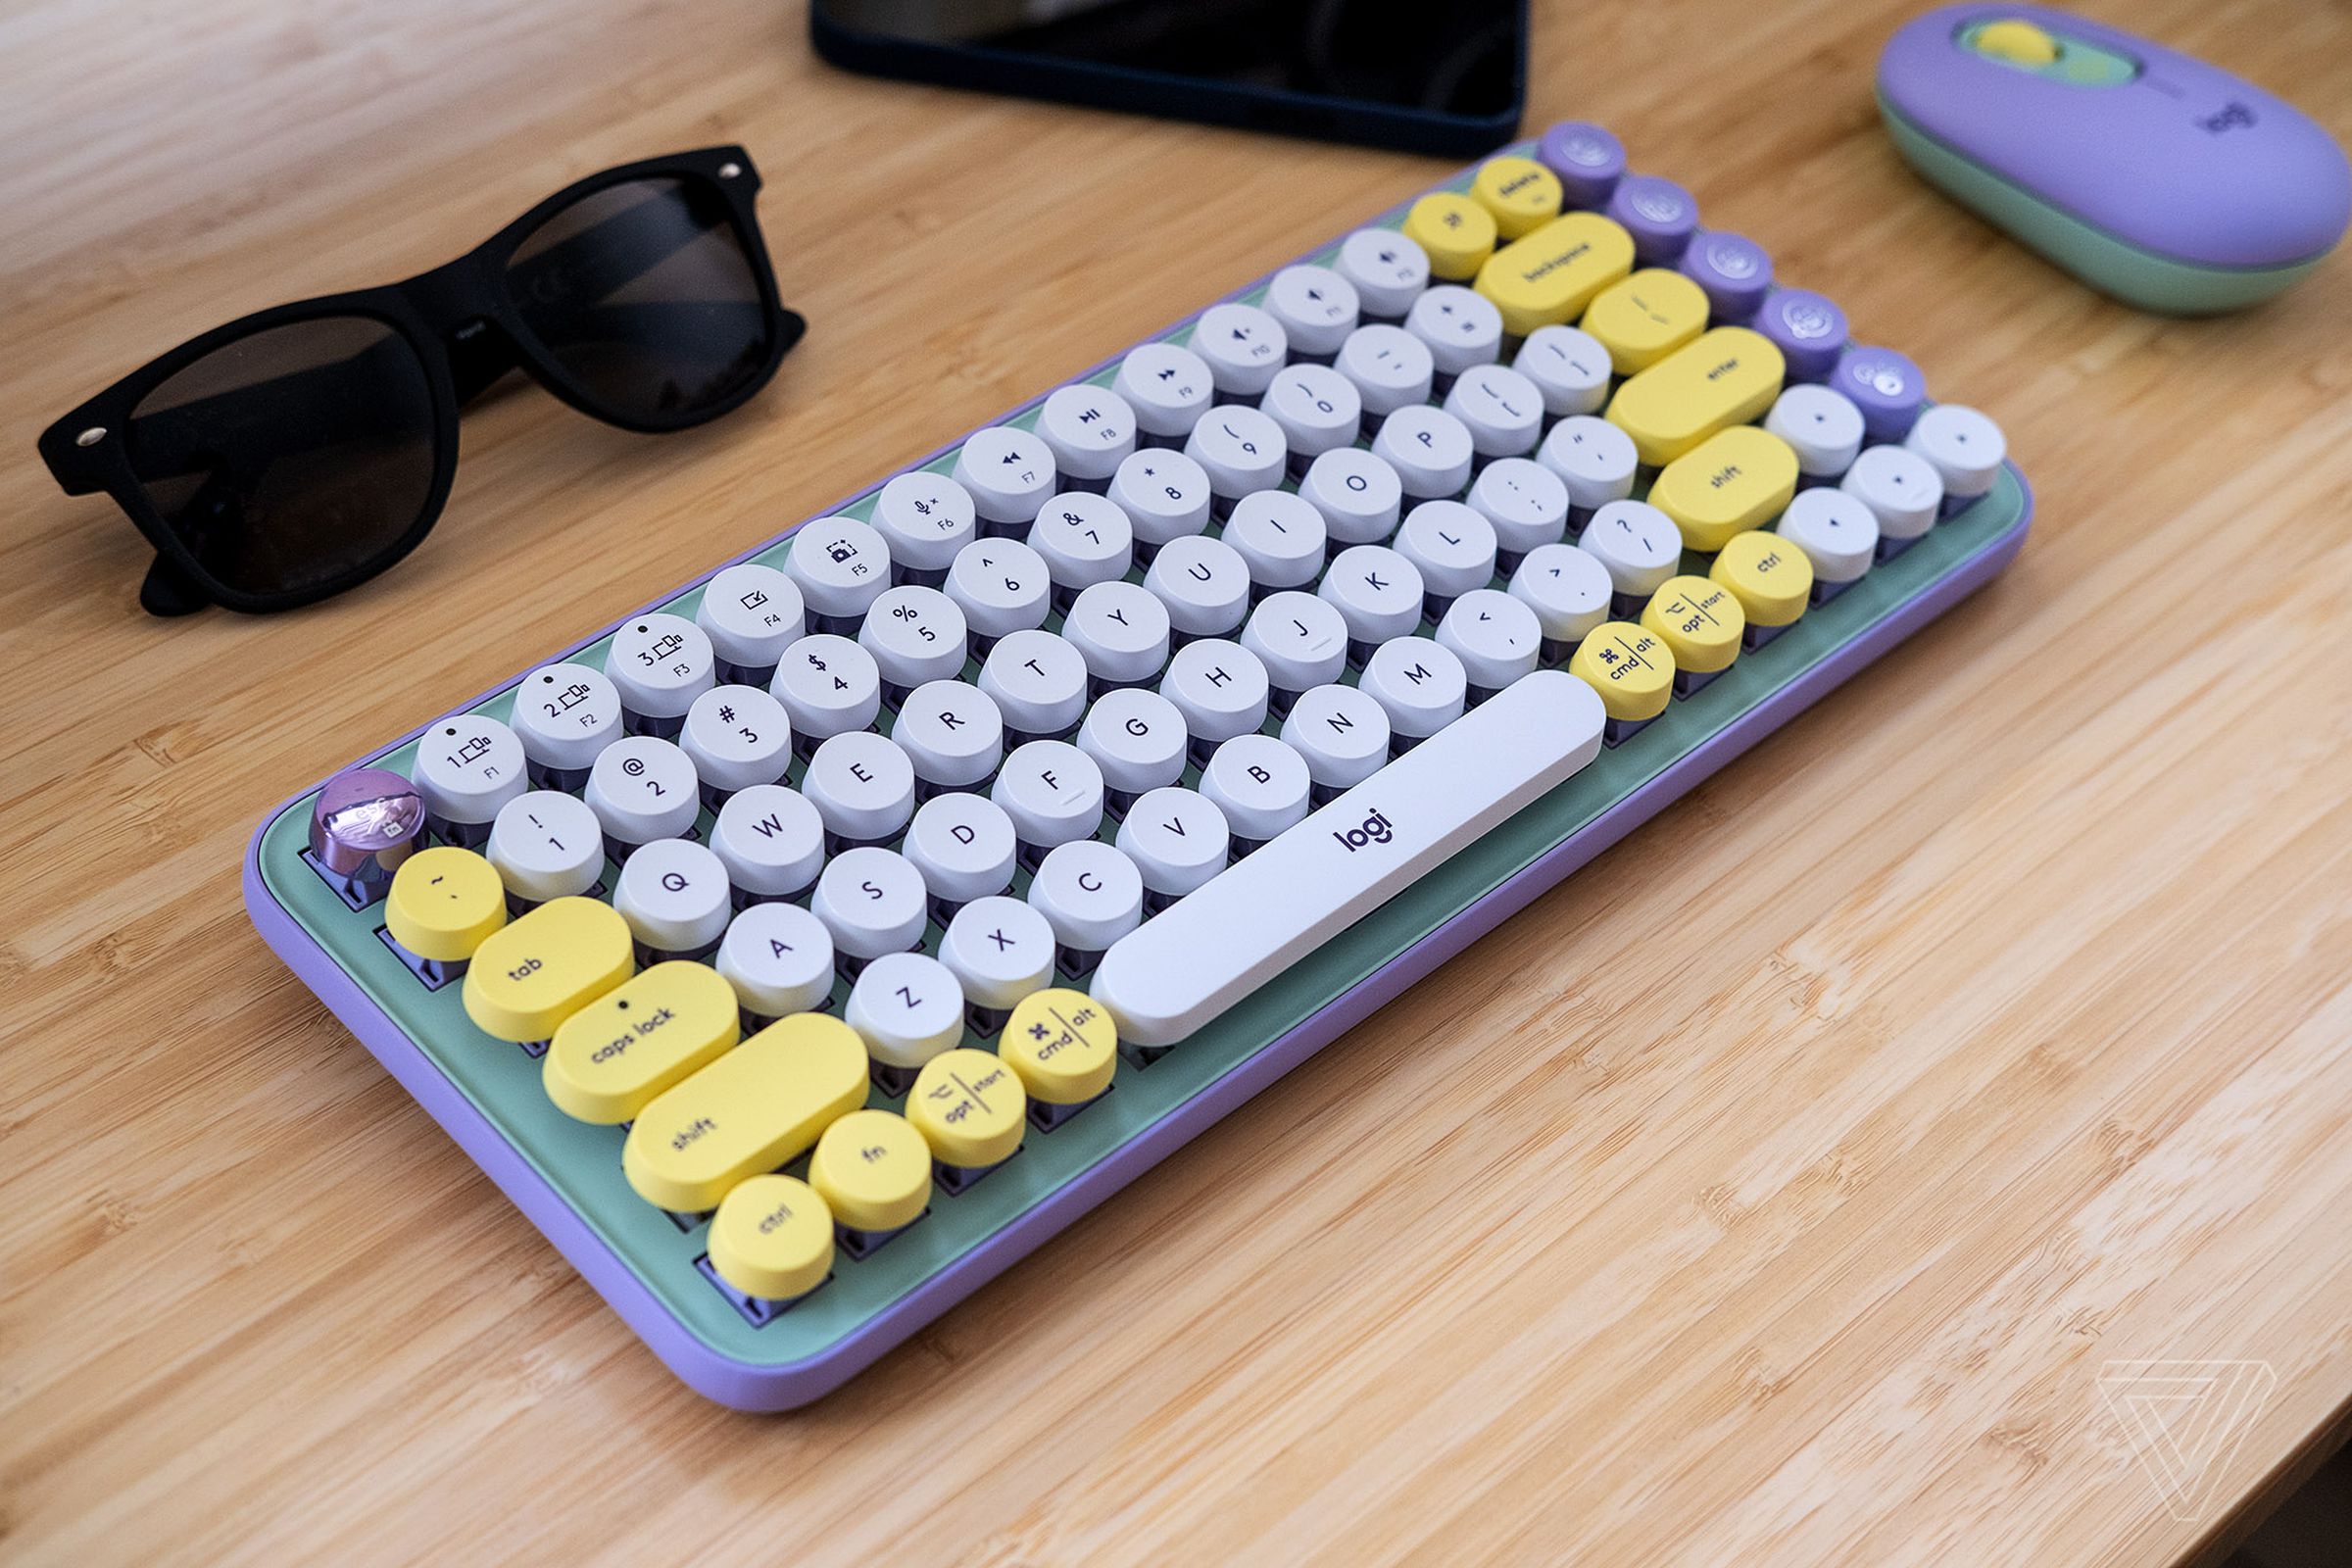 The Pop Keys is an undeniably cute little keyboard.